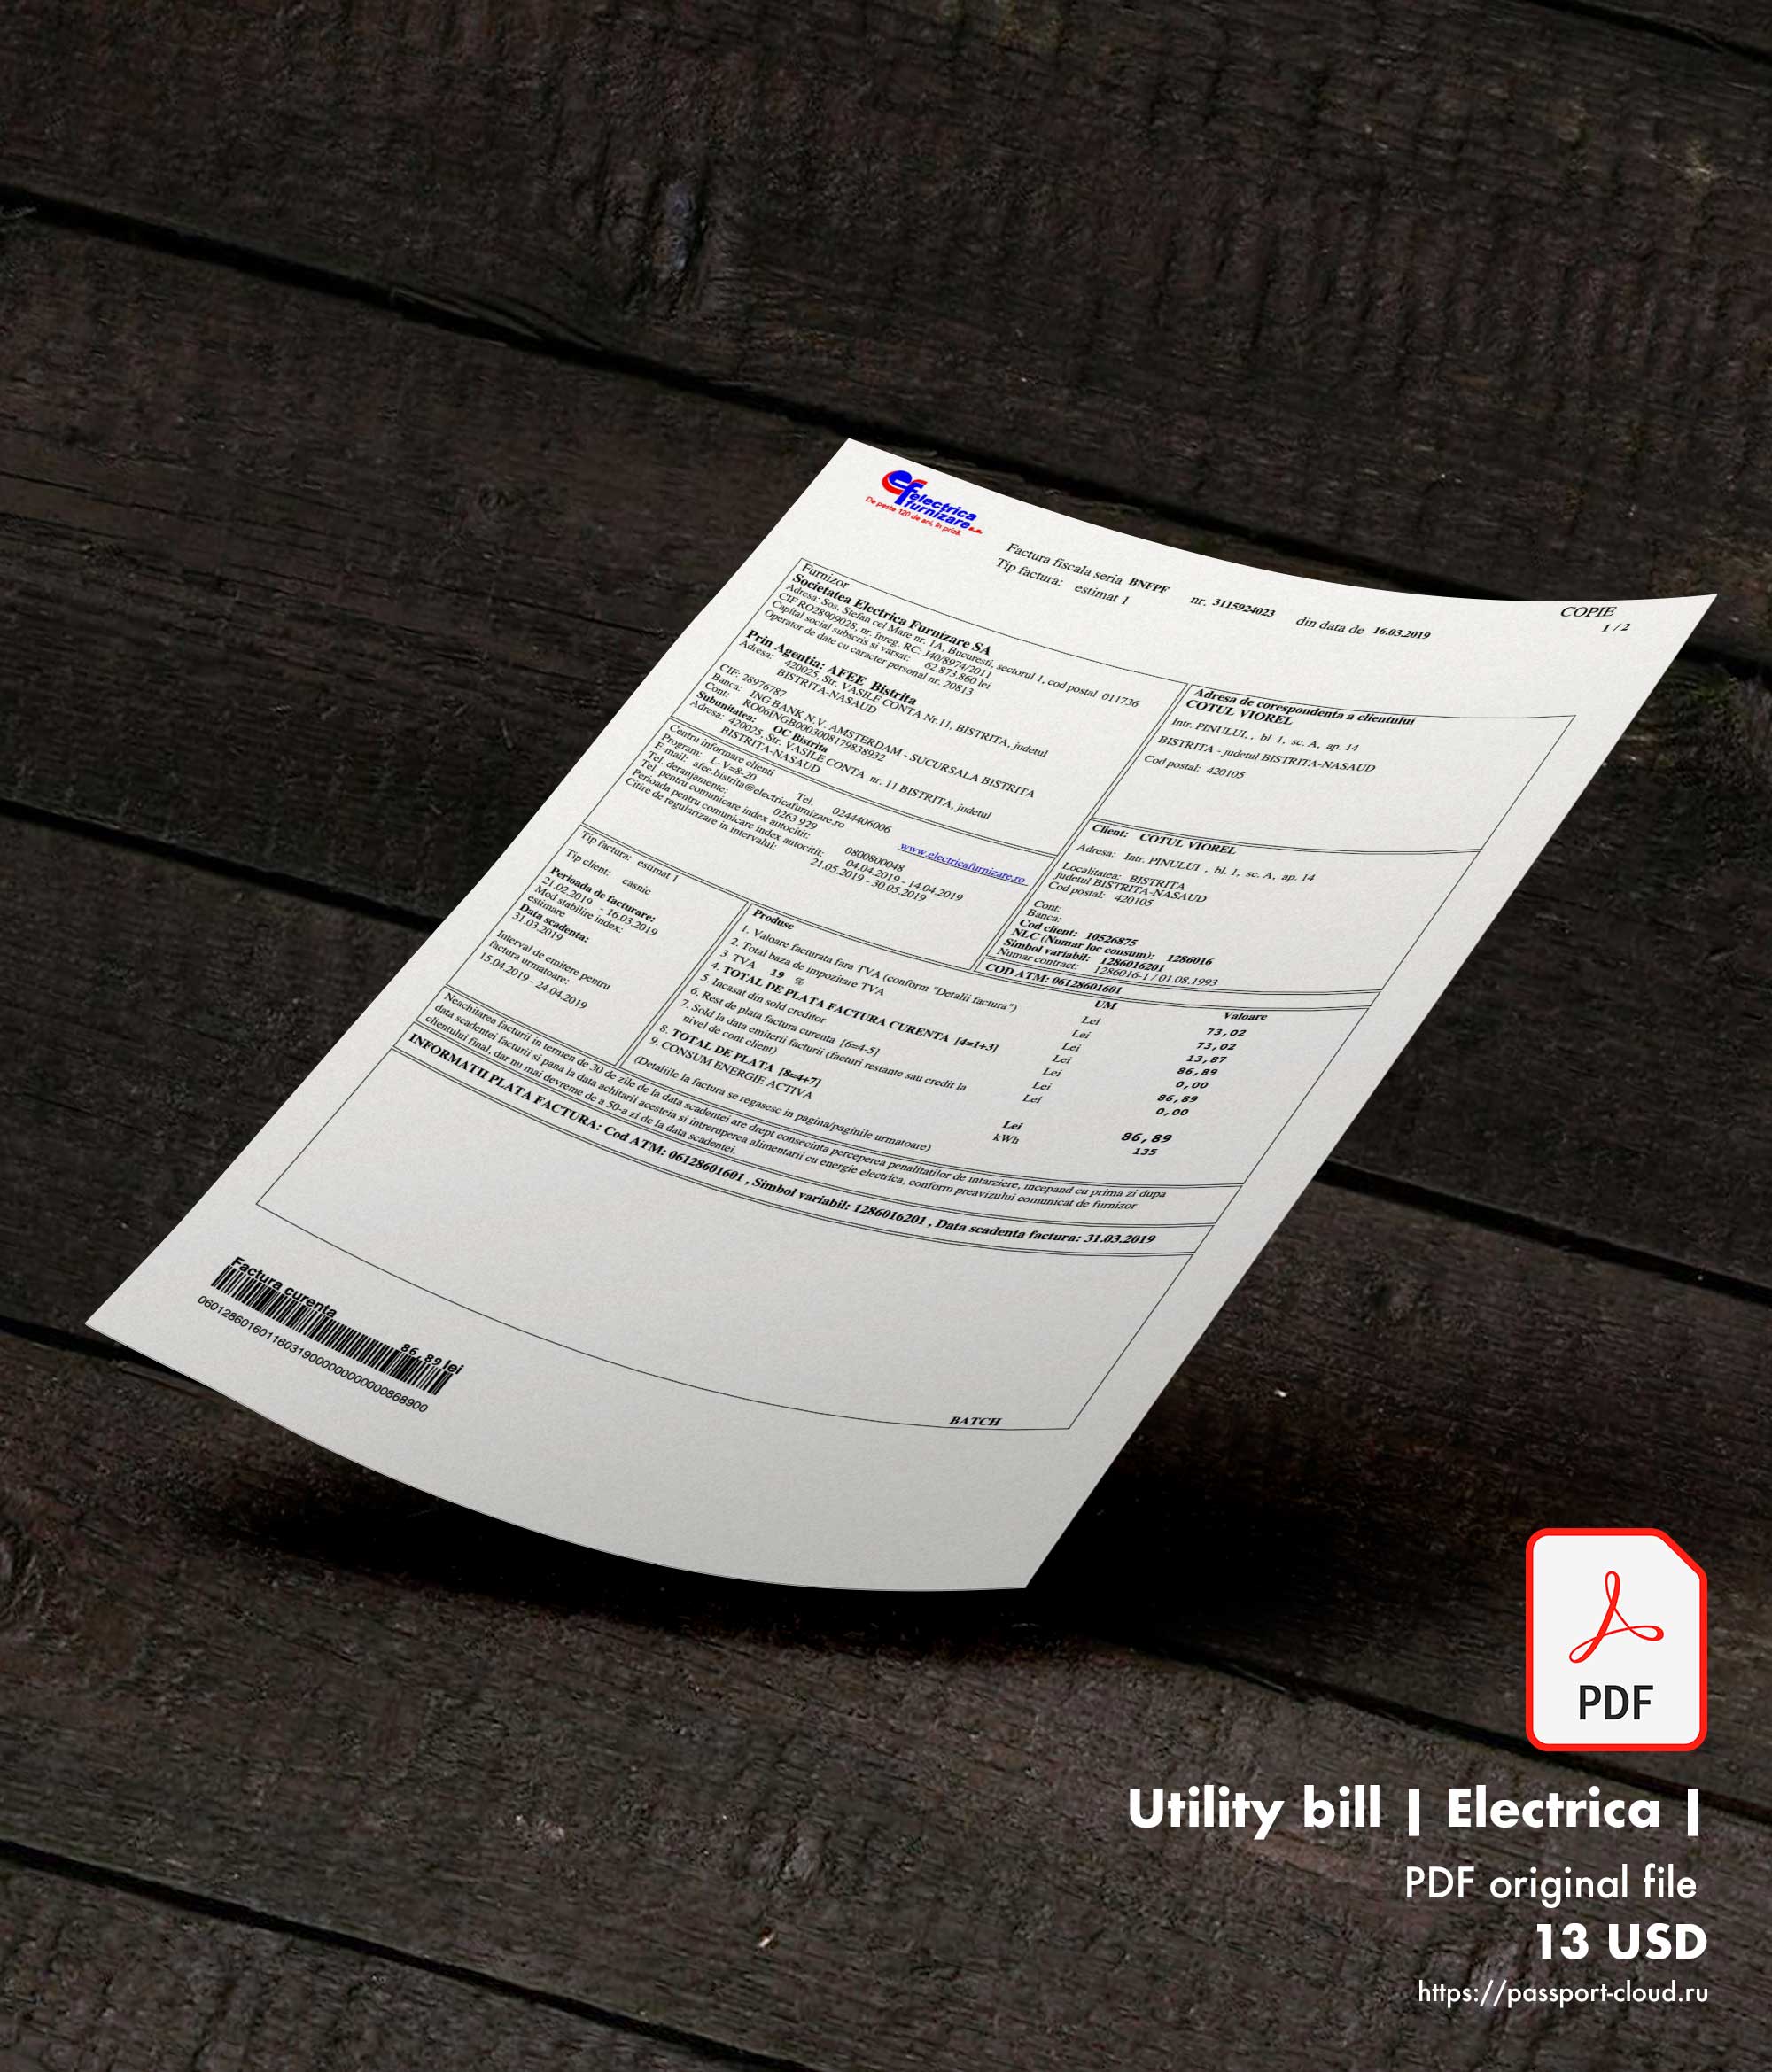 Utility bill | Electrica | Romania |1